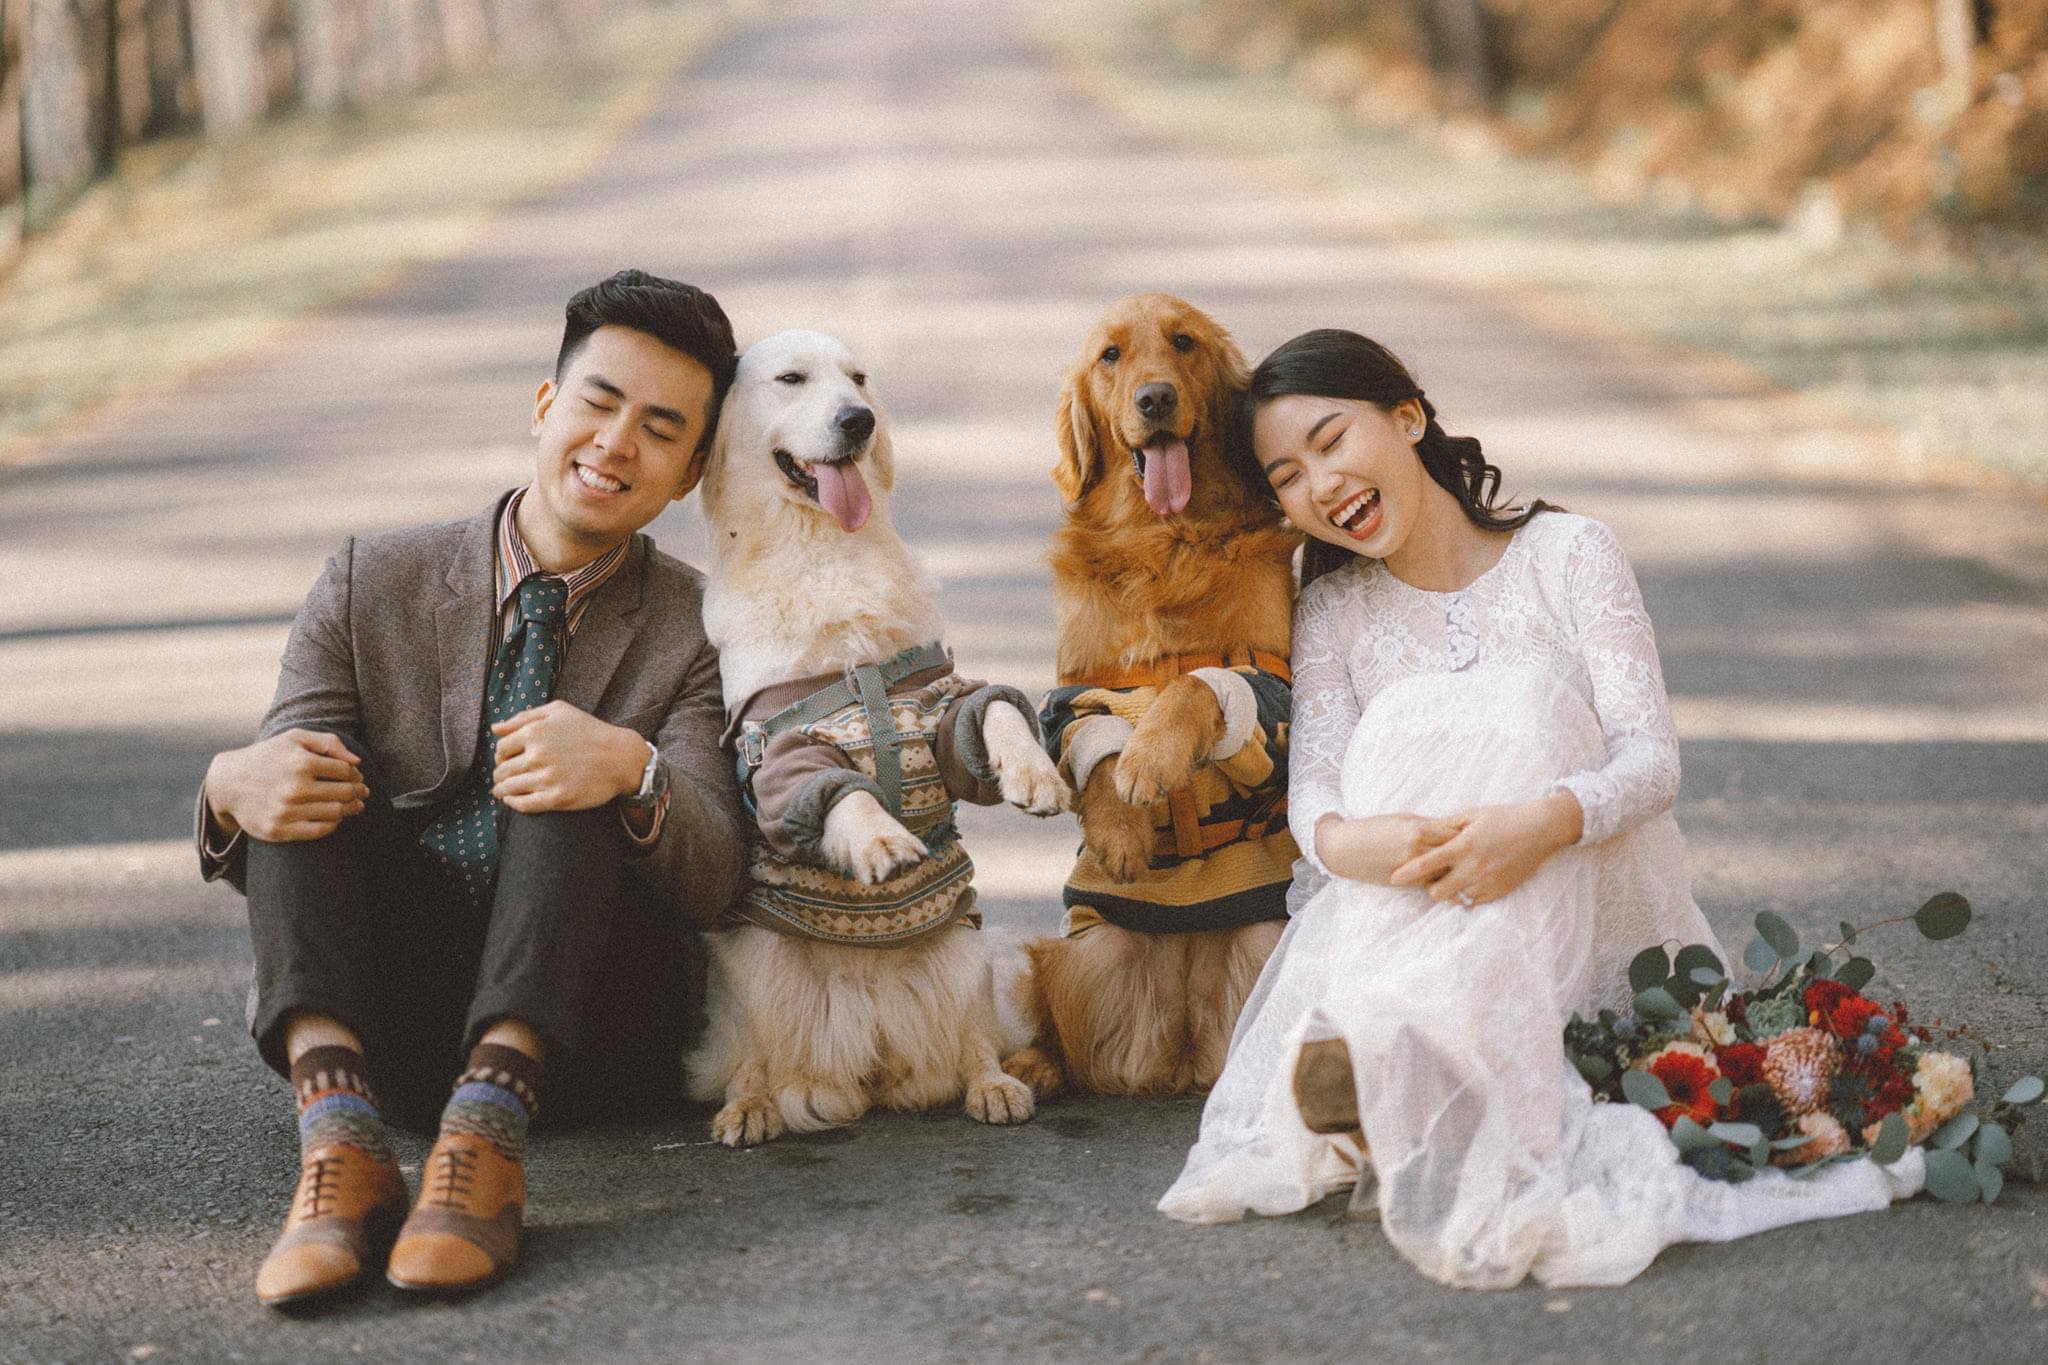 Ảnh cưới cún: Đám cưới của chủ và chú cún của mình sẽ trở thành một kỷ niệm đáng nhớ suốt đời. Hãy cùng thưởng thức những hình ảnh cưới của cún và chủ nhân, chắc chắc bạn sẽ không thể rời mắt khỏi bức ảnh đó.